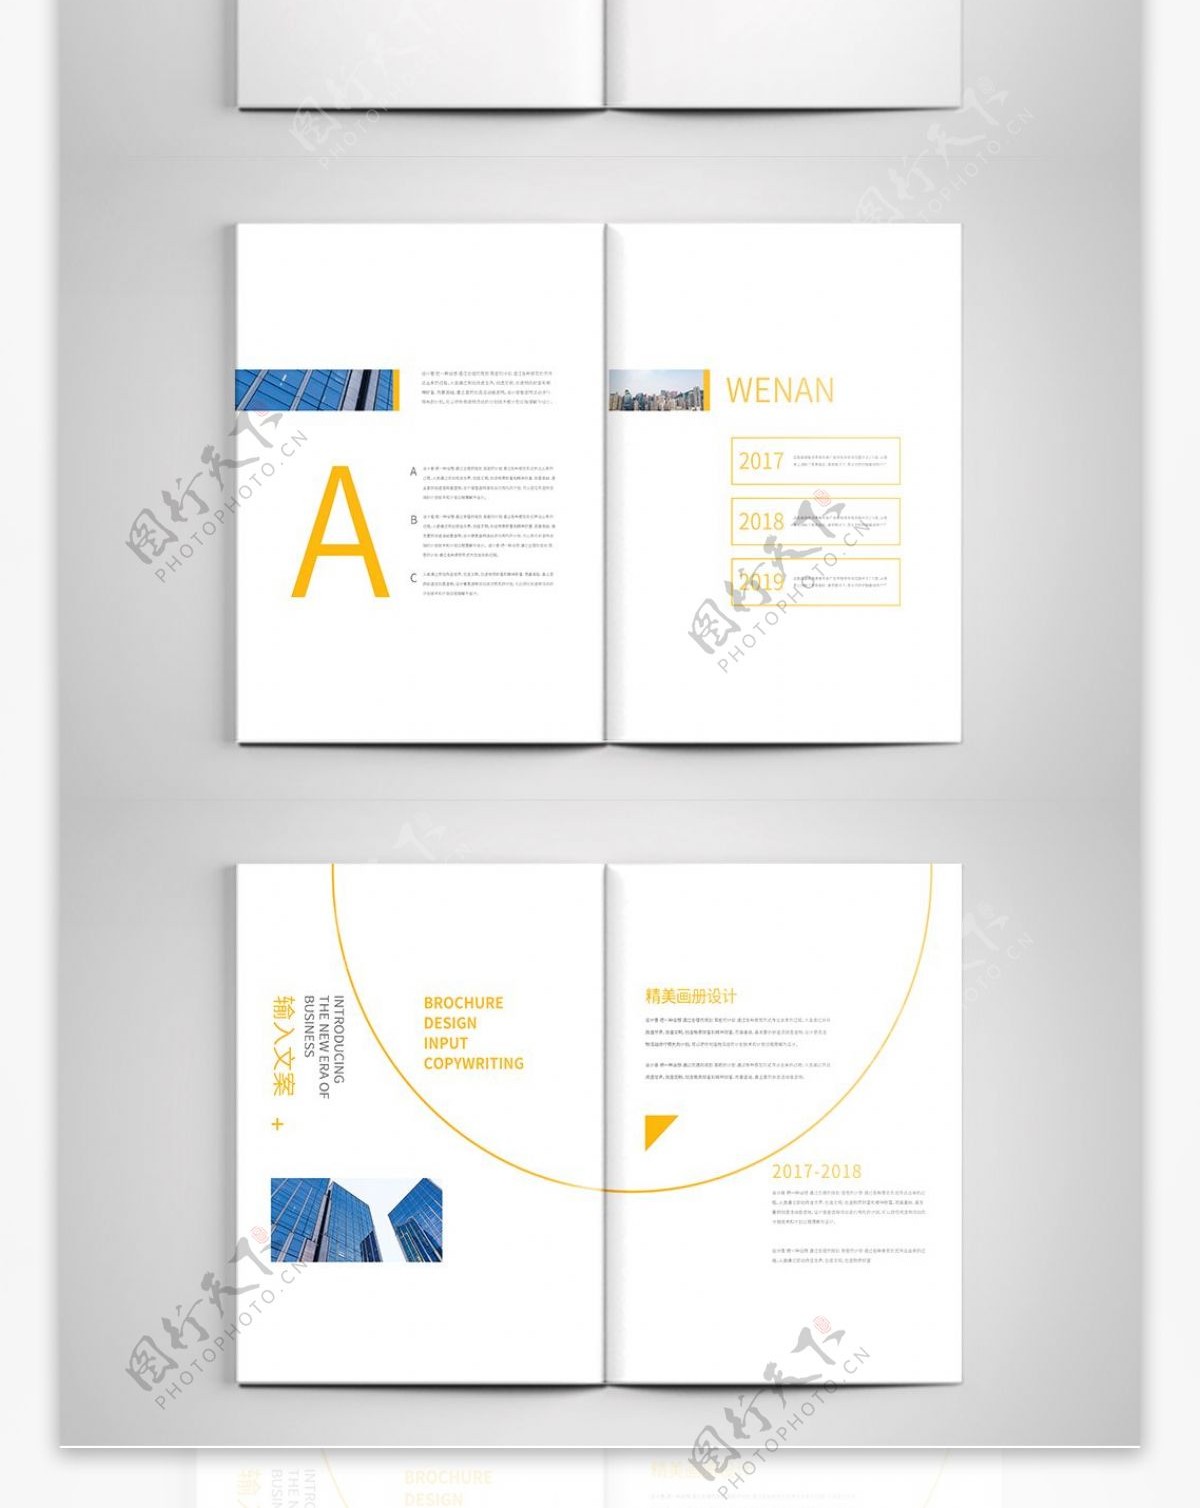 黄色简约大气企业画册设计